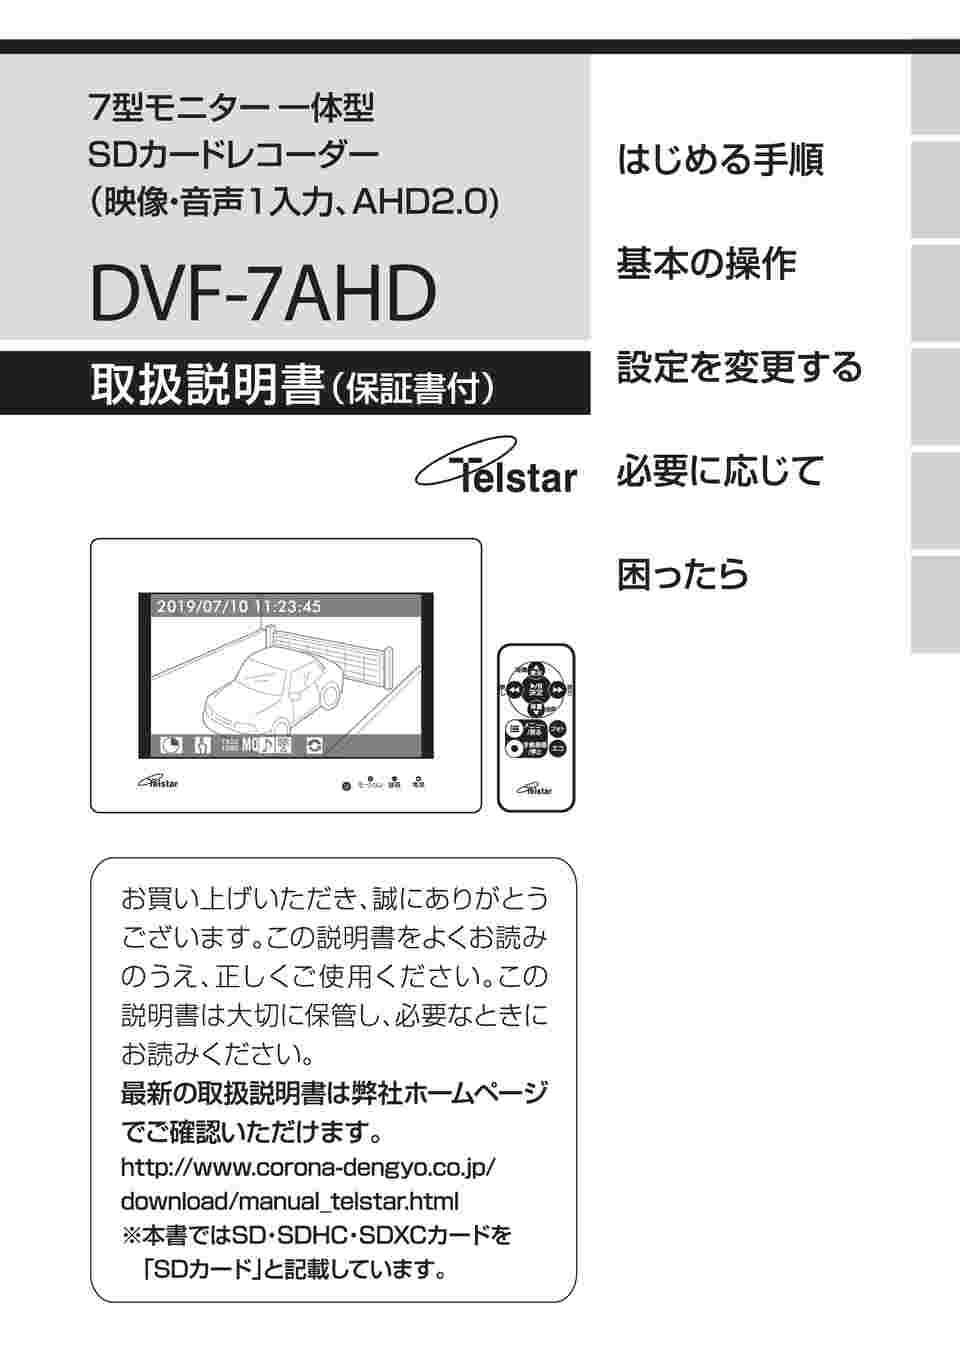 得価正規品コロナ電業 7型モニター一体型SDカードレコーダー DVF-7AHD ホワイト その他